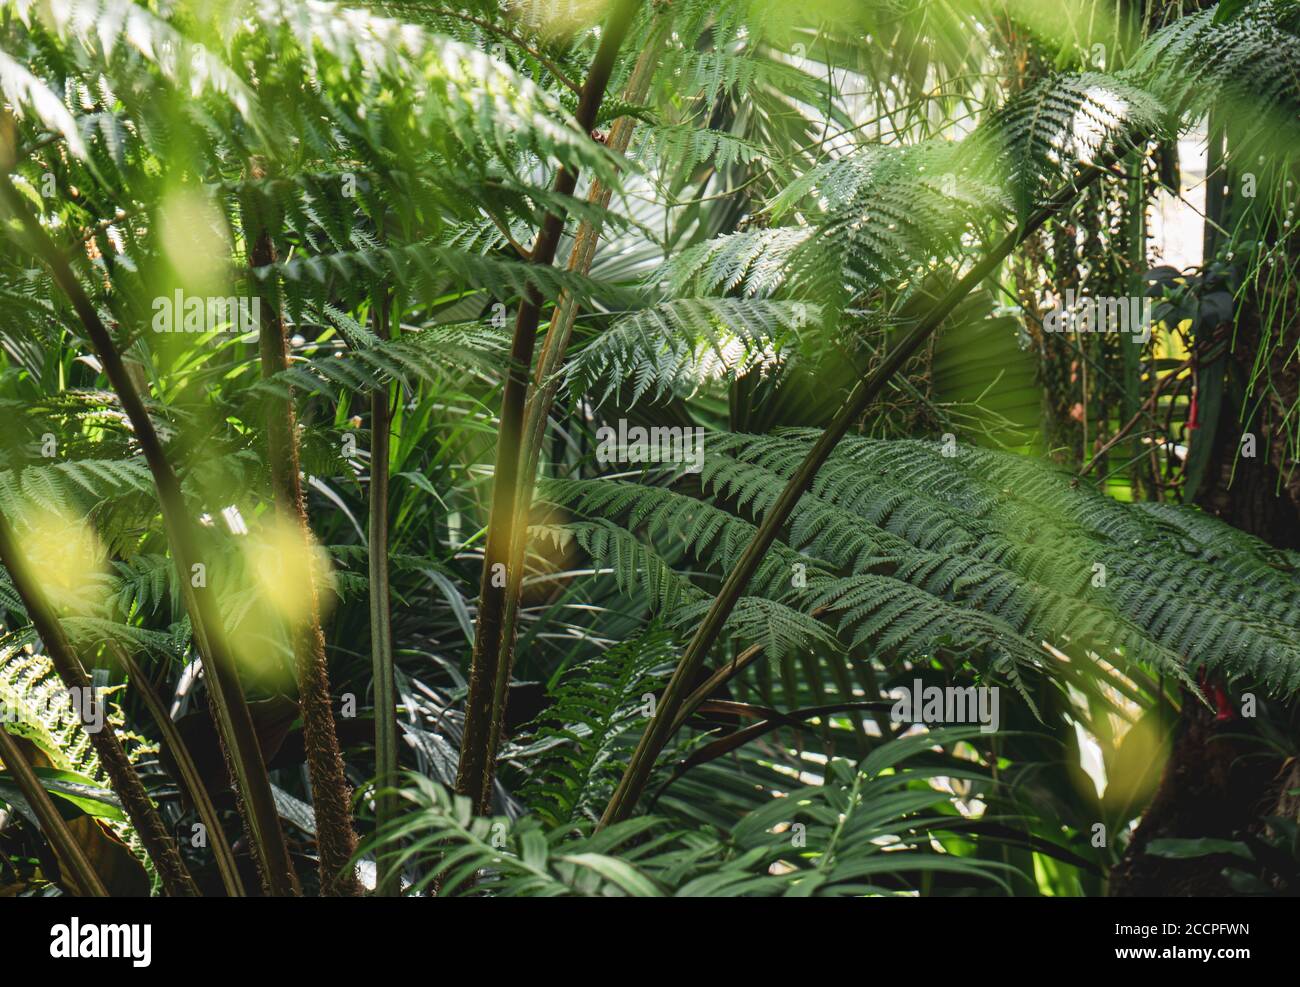 Plantas bio diversas en el invernadero de un jardín botánico exuberante de la selva tropical. Foto de stock